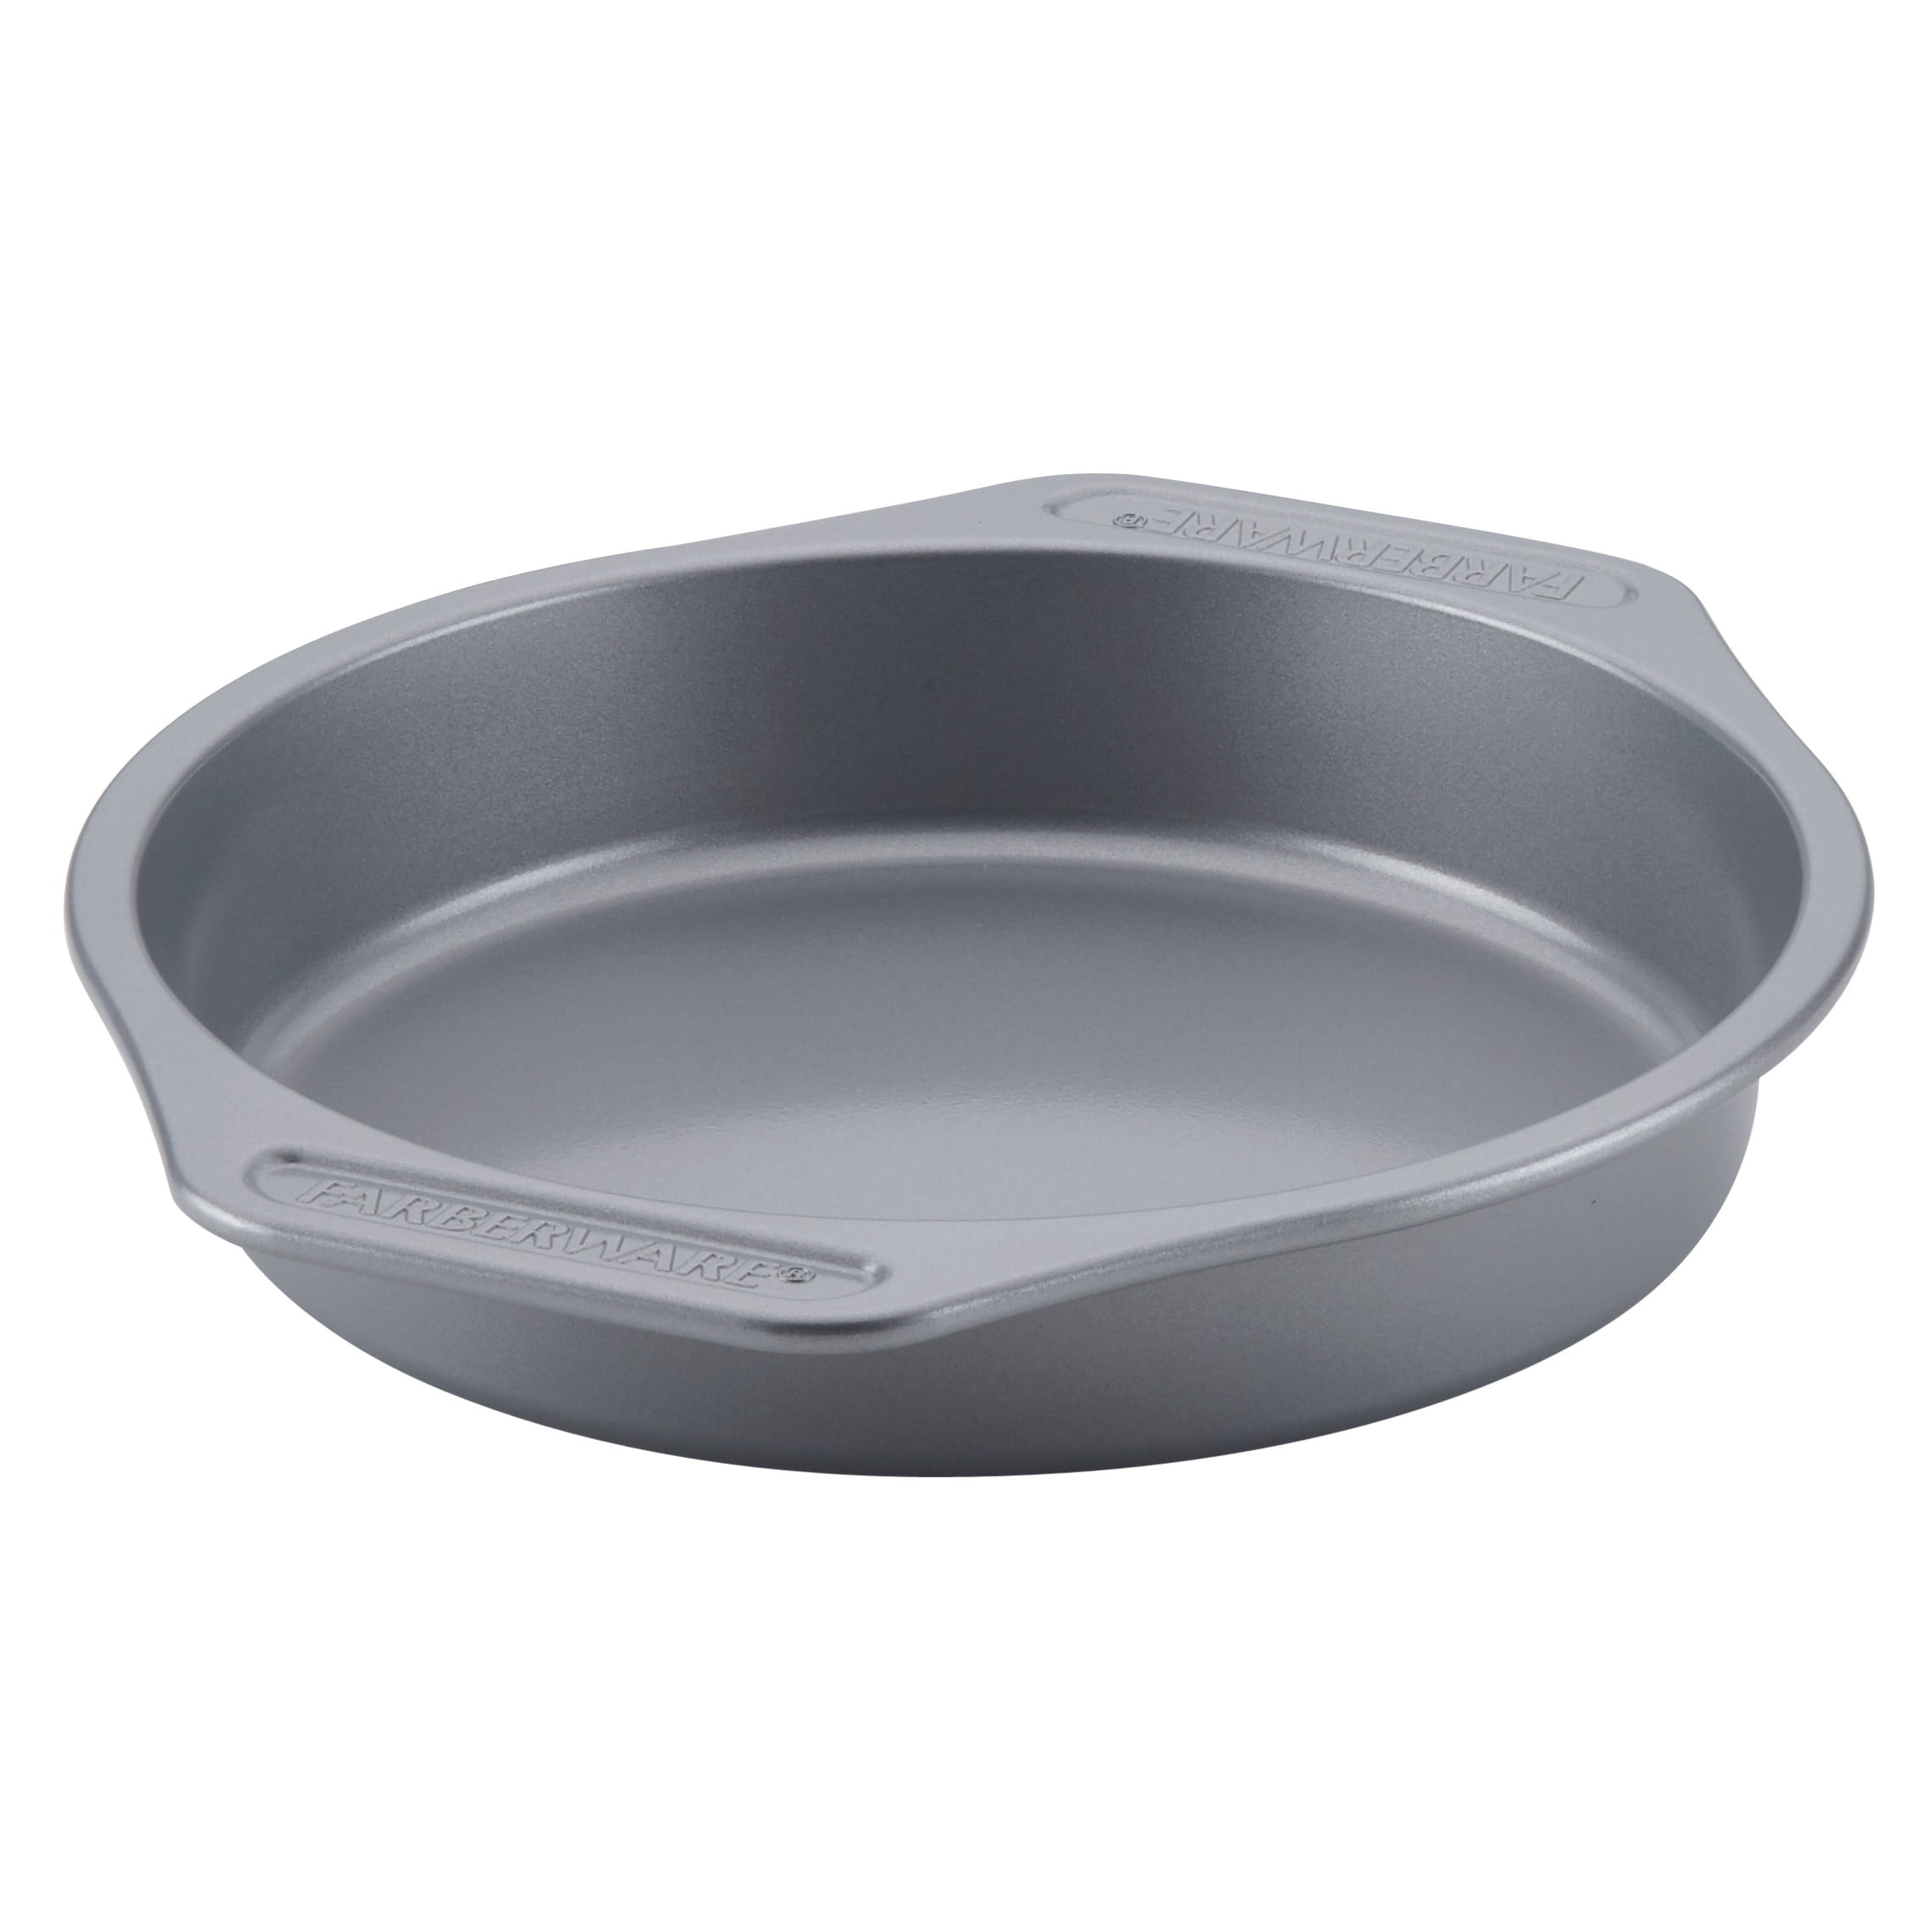 Gray Farberware Nonstick Bakeware 9-Inch Round Cake Pan 